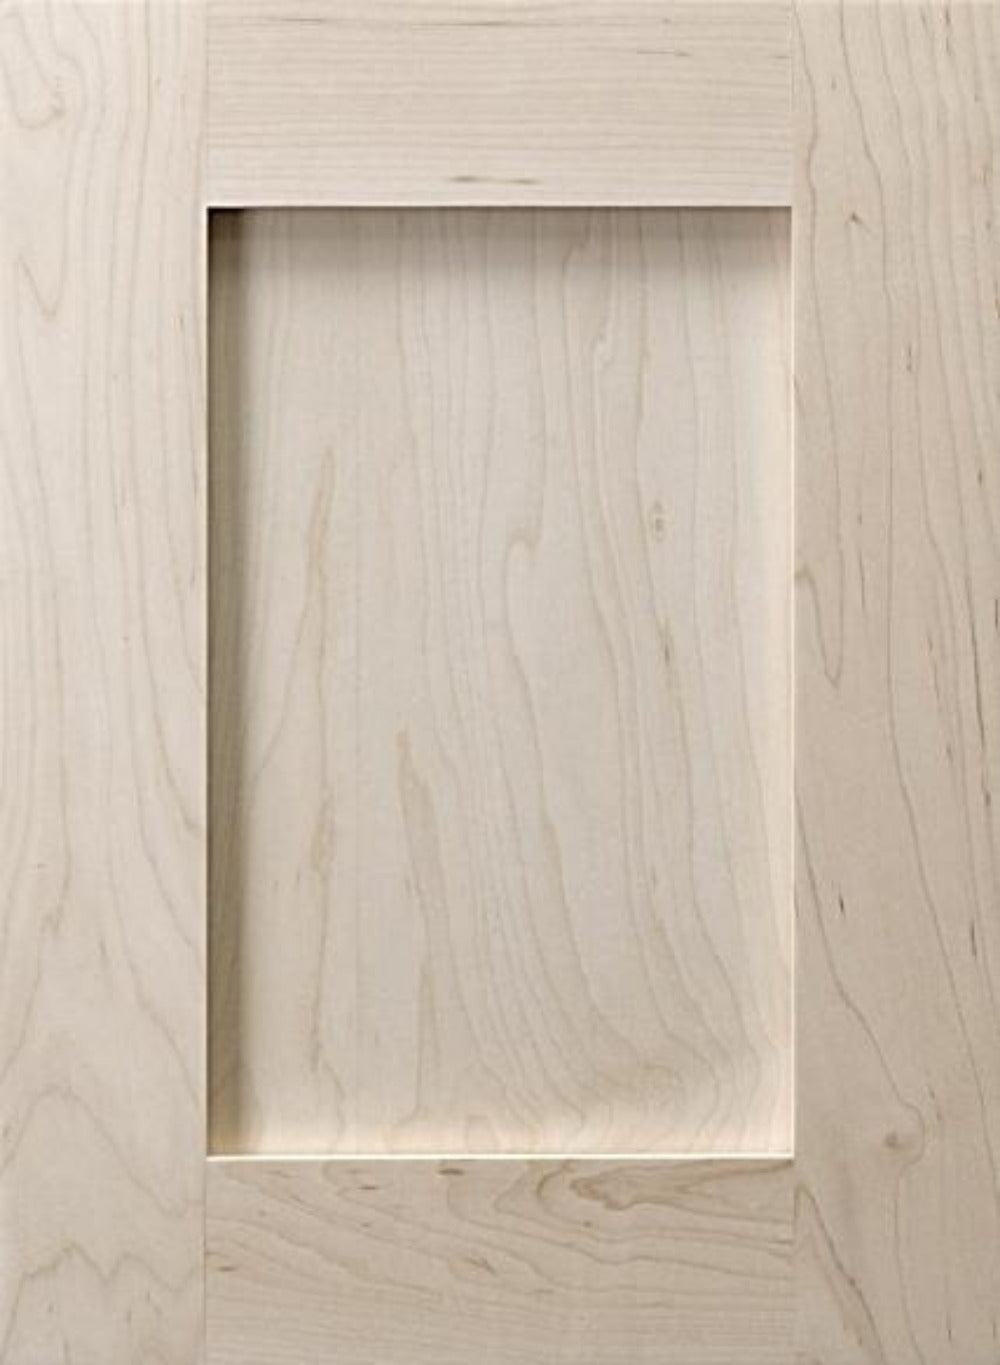 Wooden Custom Cabinet Doors Receding